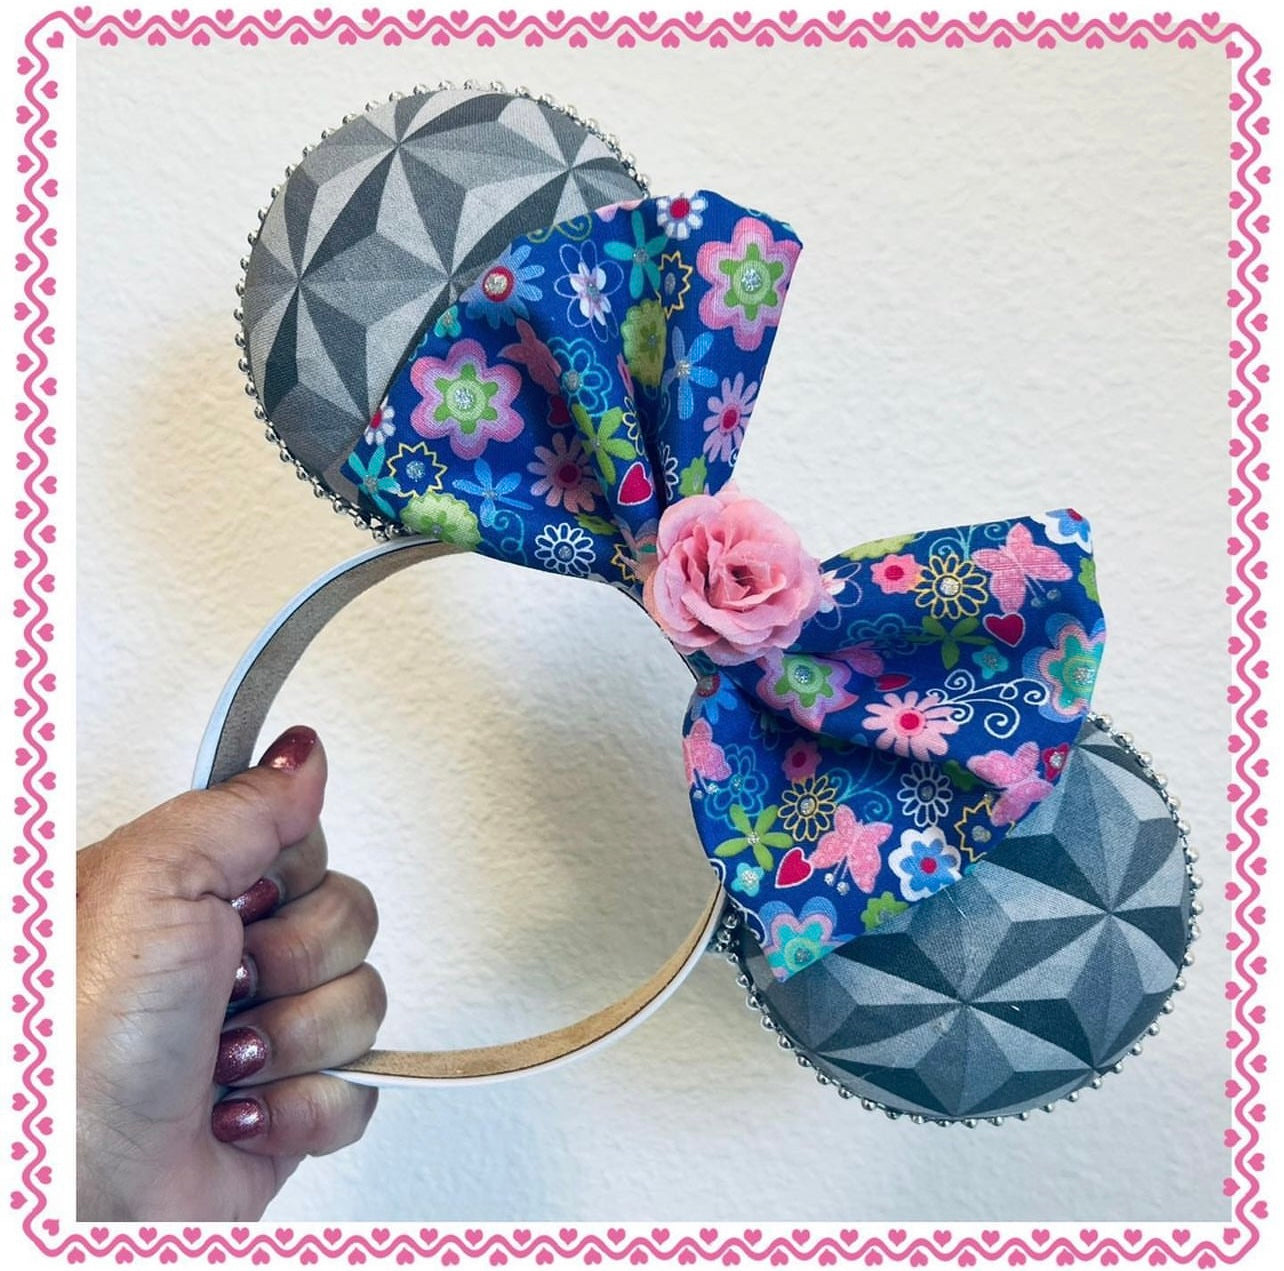 Festival-Flower/Garden Inspired Ears